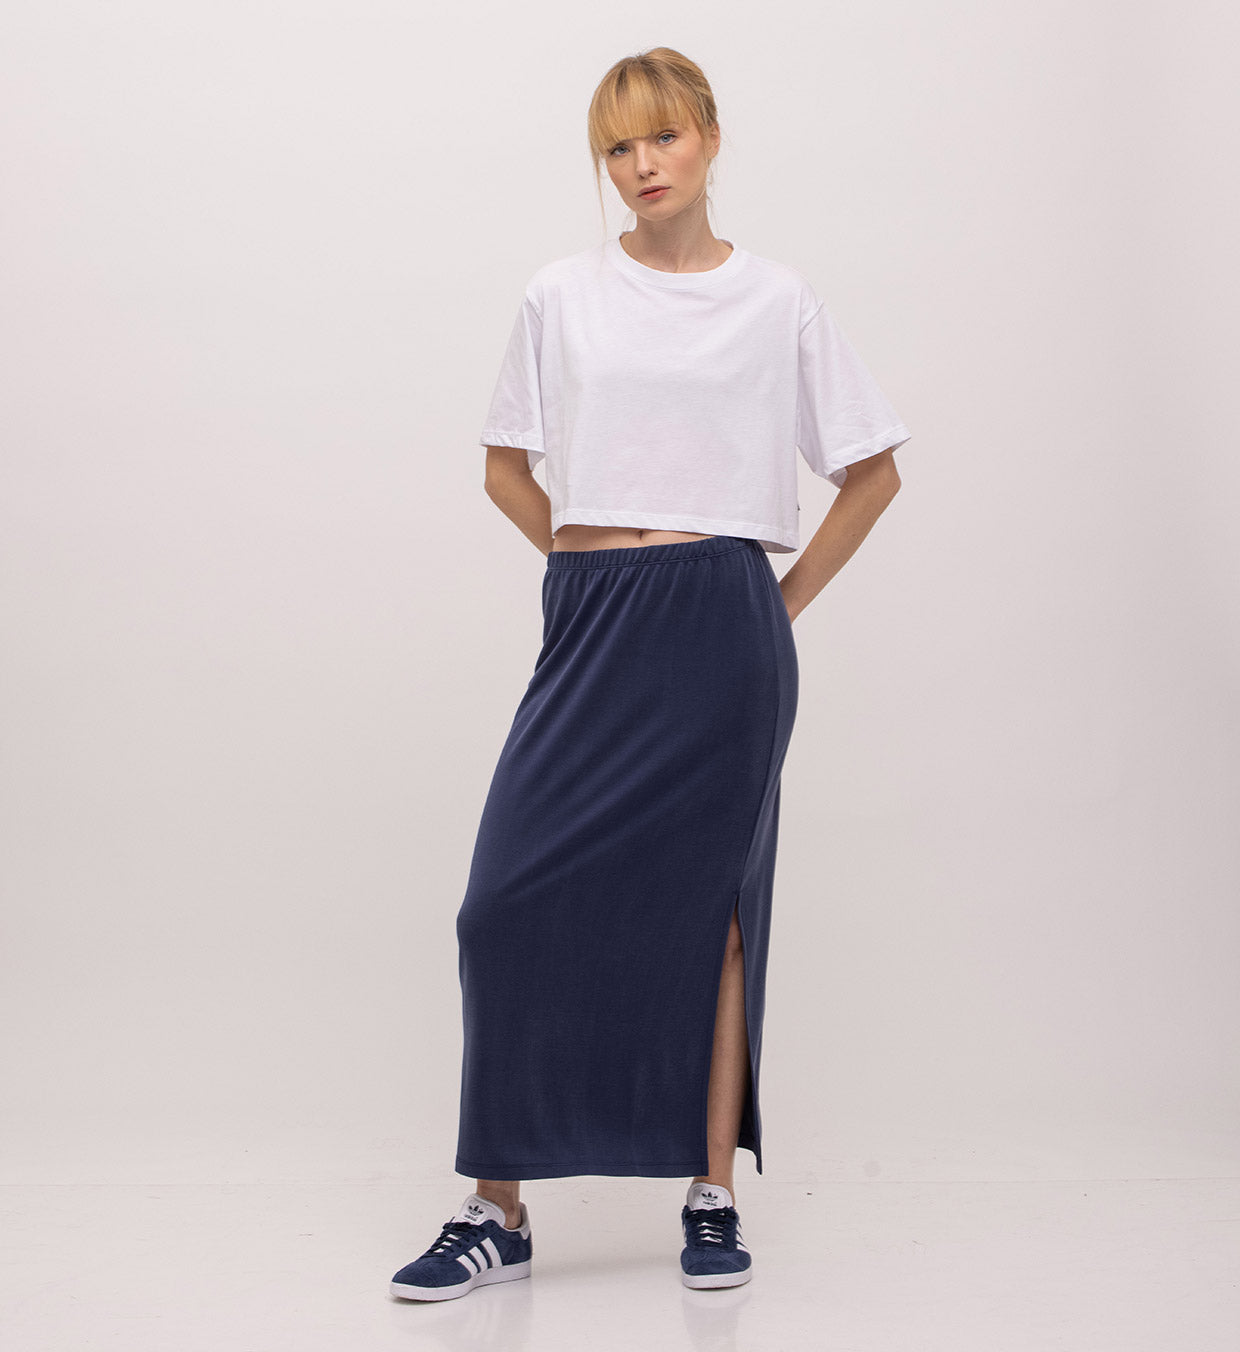 Melania Skirt